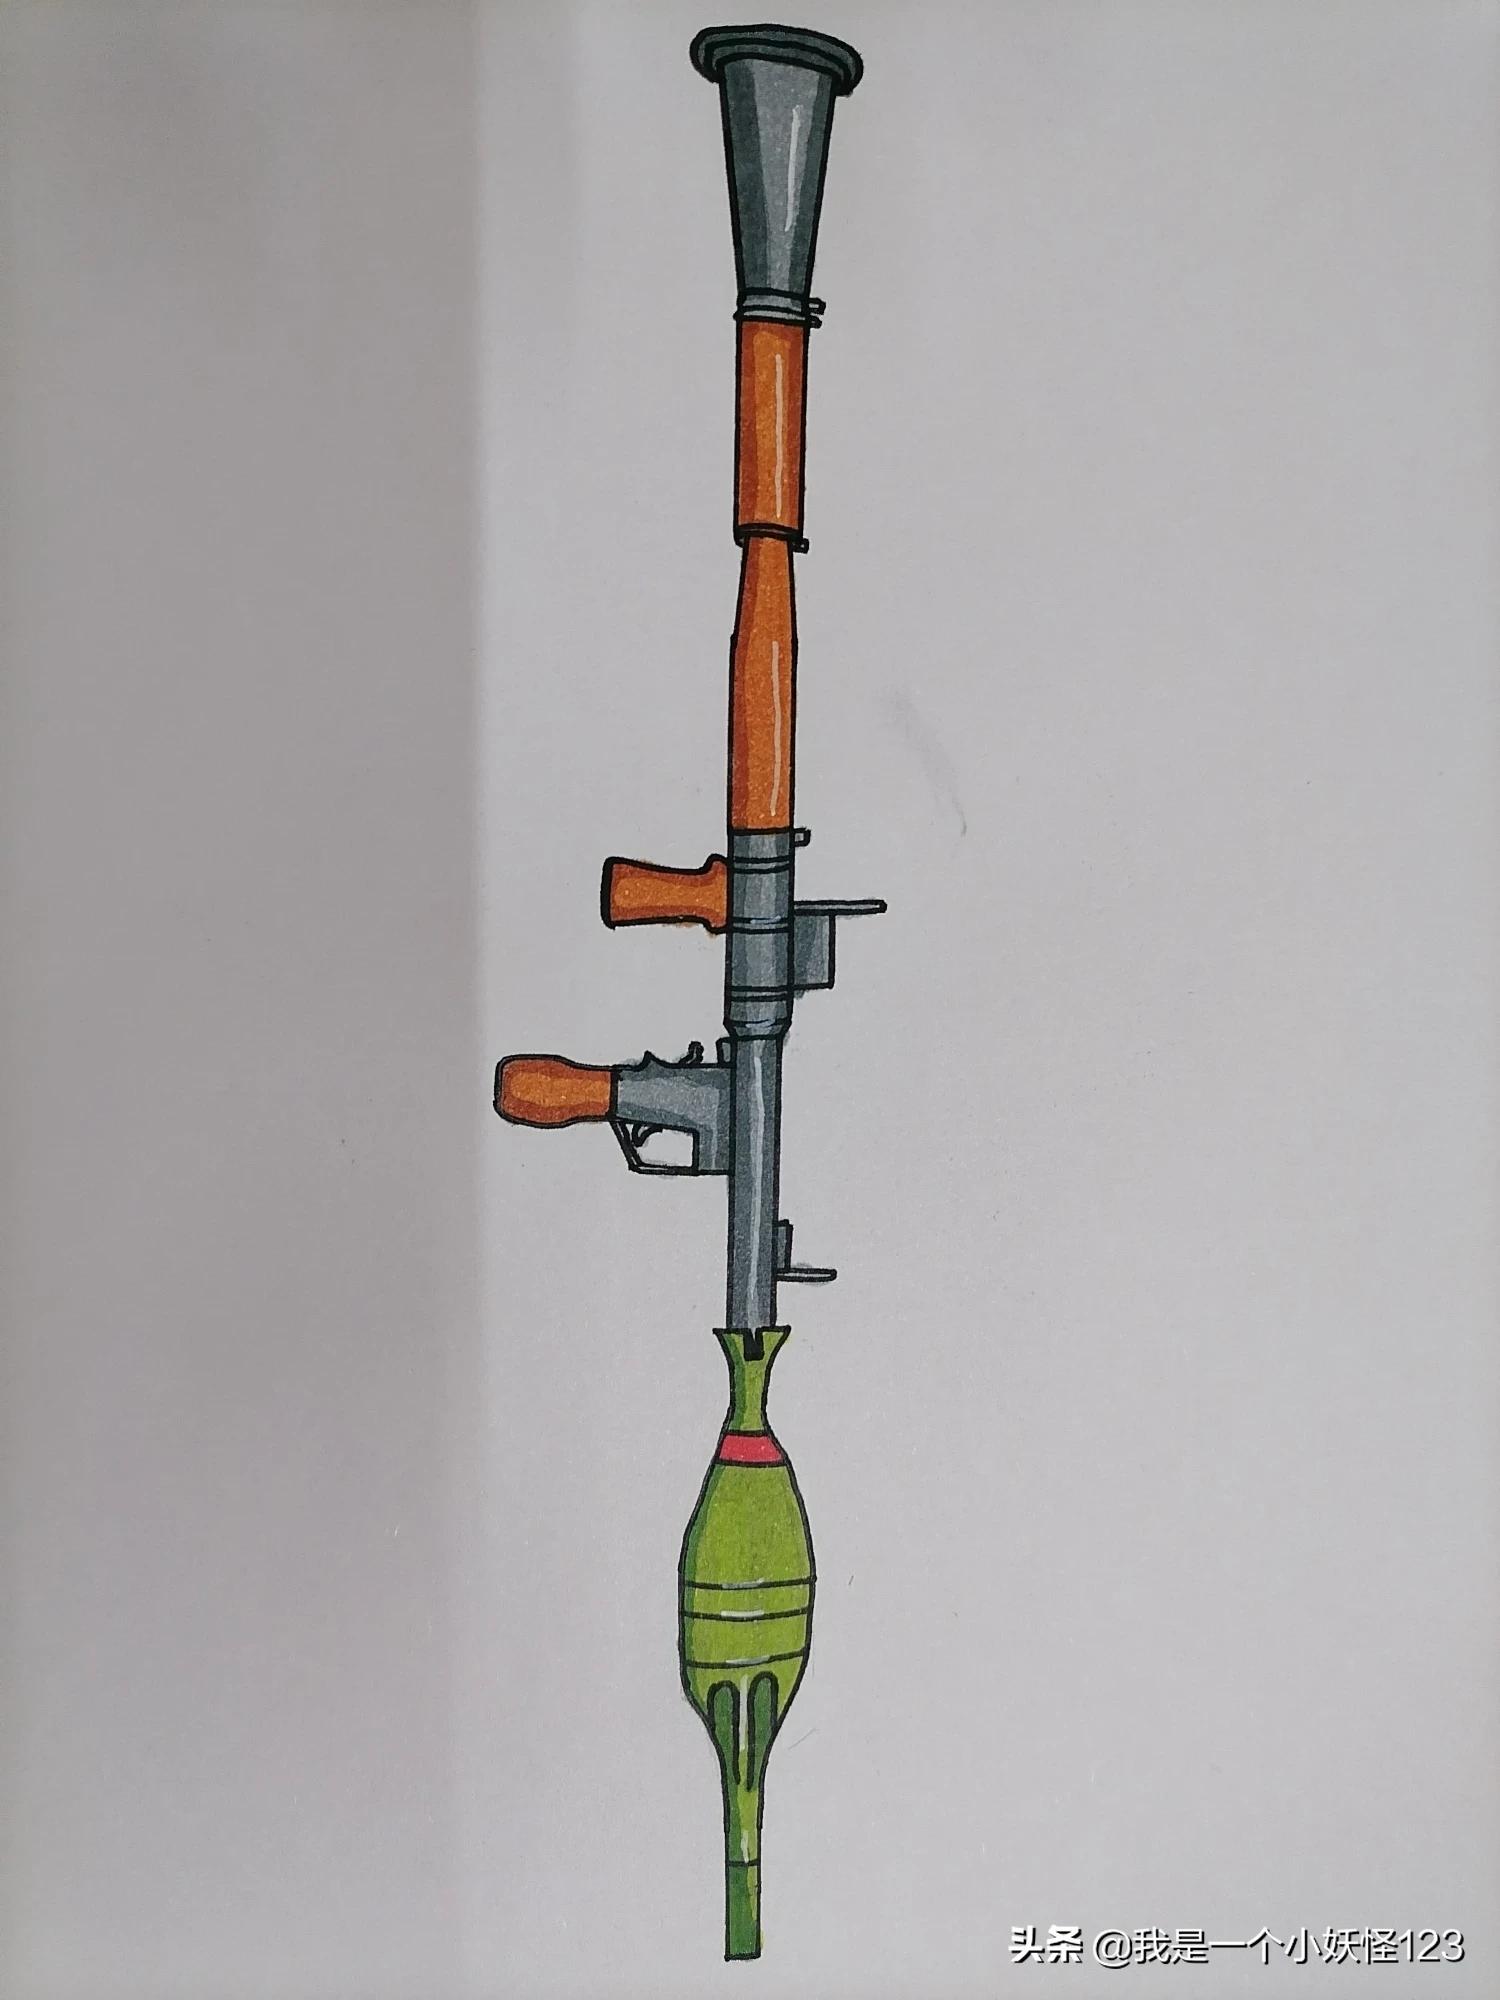 铁拳火箭筒画法图片